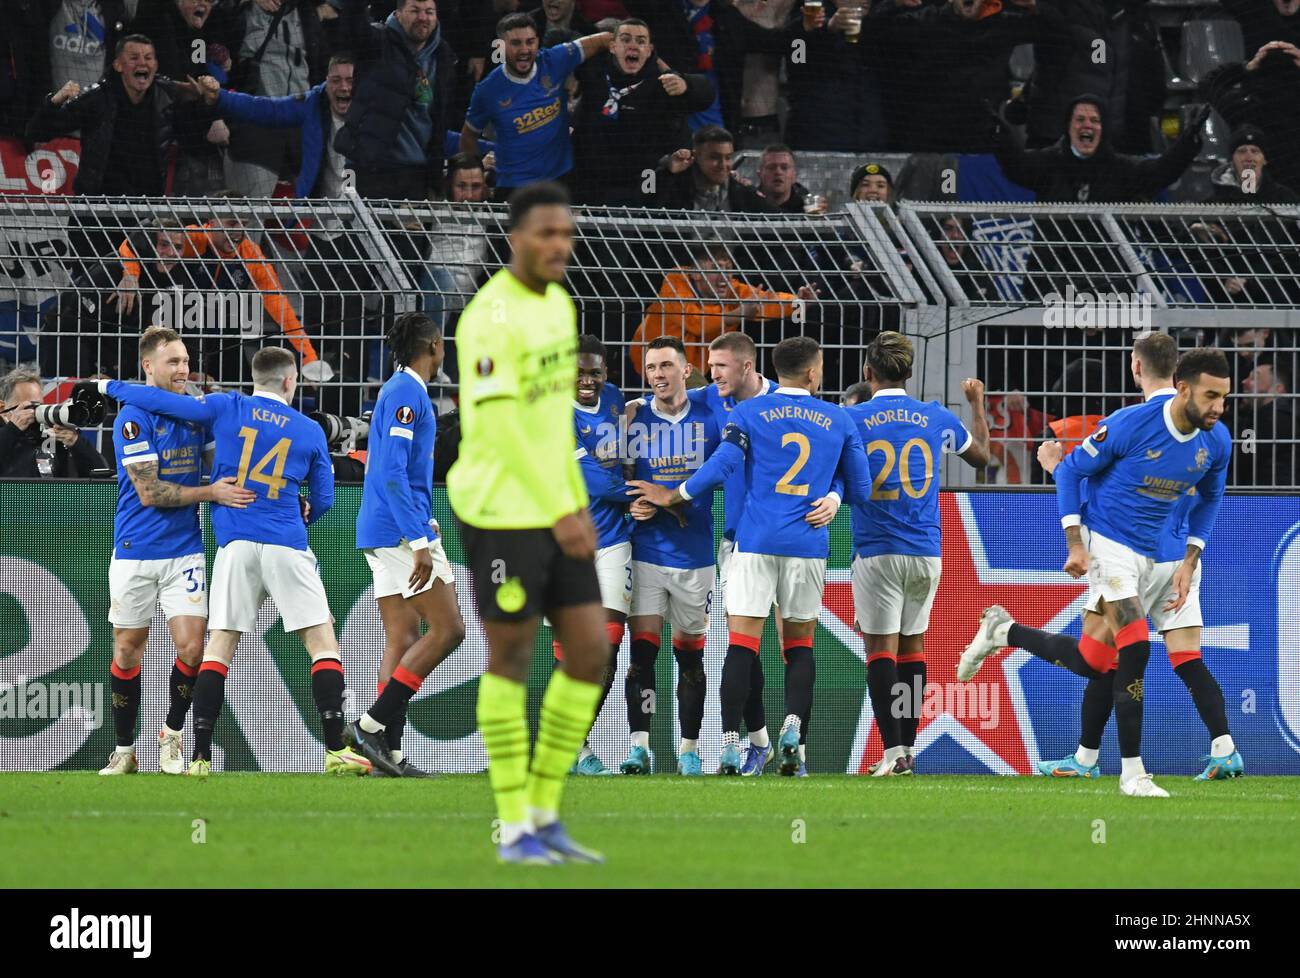 Die Rangers-Spieler jubeln während des UEFA Europa Conference League Playoff 1st Leg im Signal Iduna Park, Dortmund, nach dem 0:3. Bilddatum: Donnerstag, 17. Februar 2022. Stockfoto